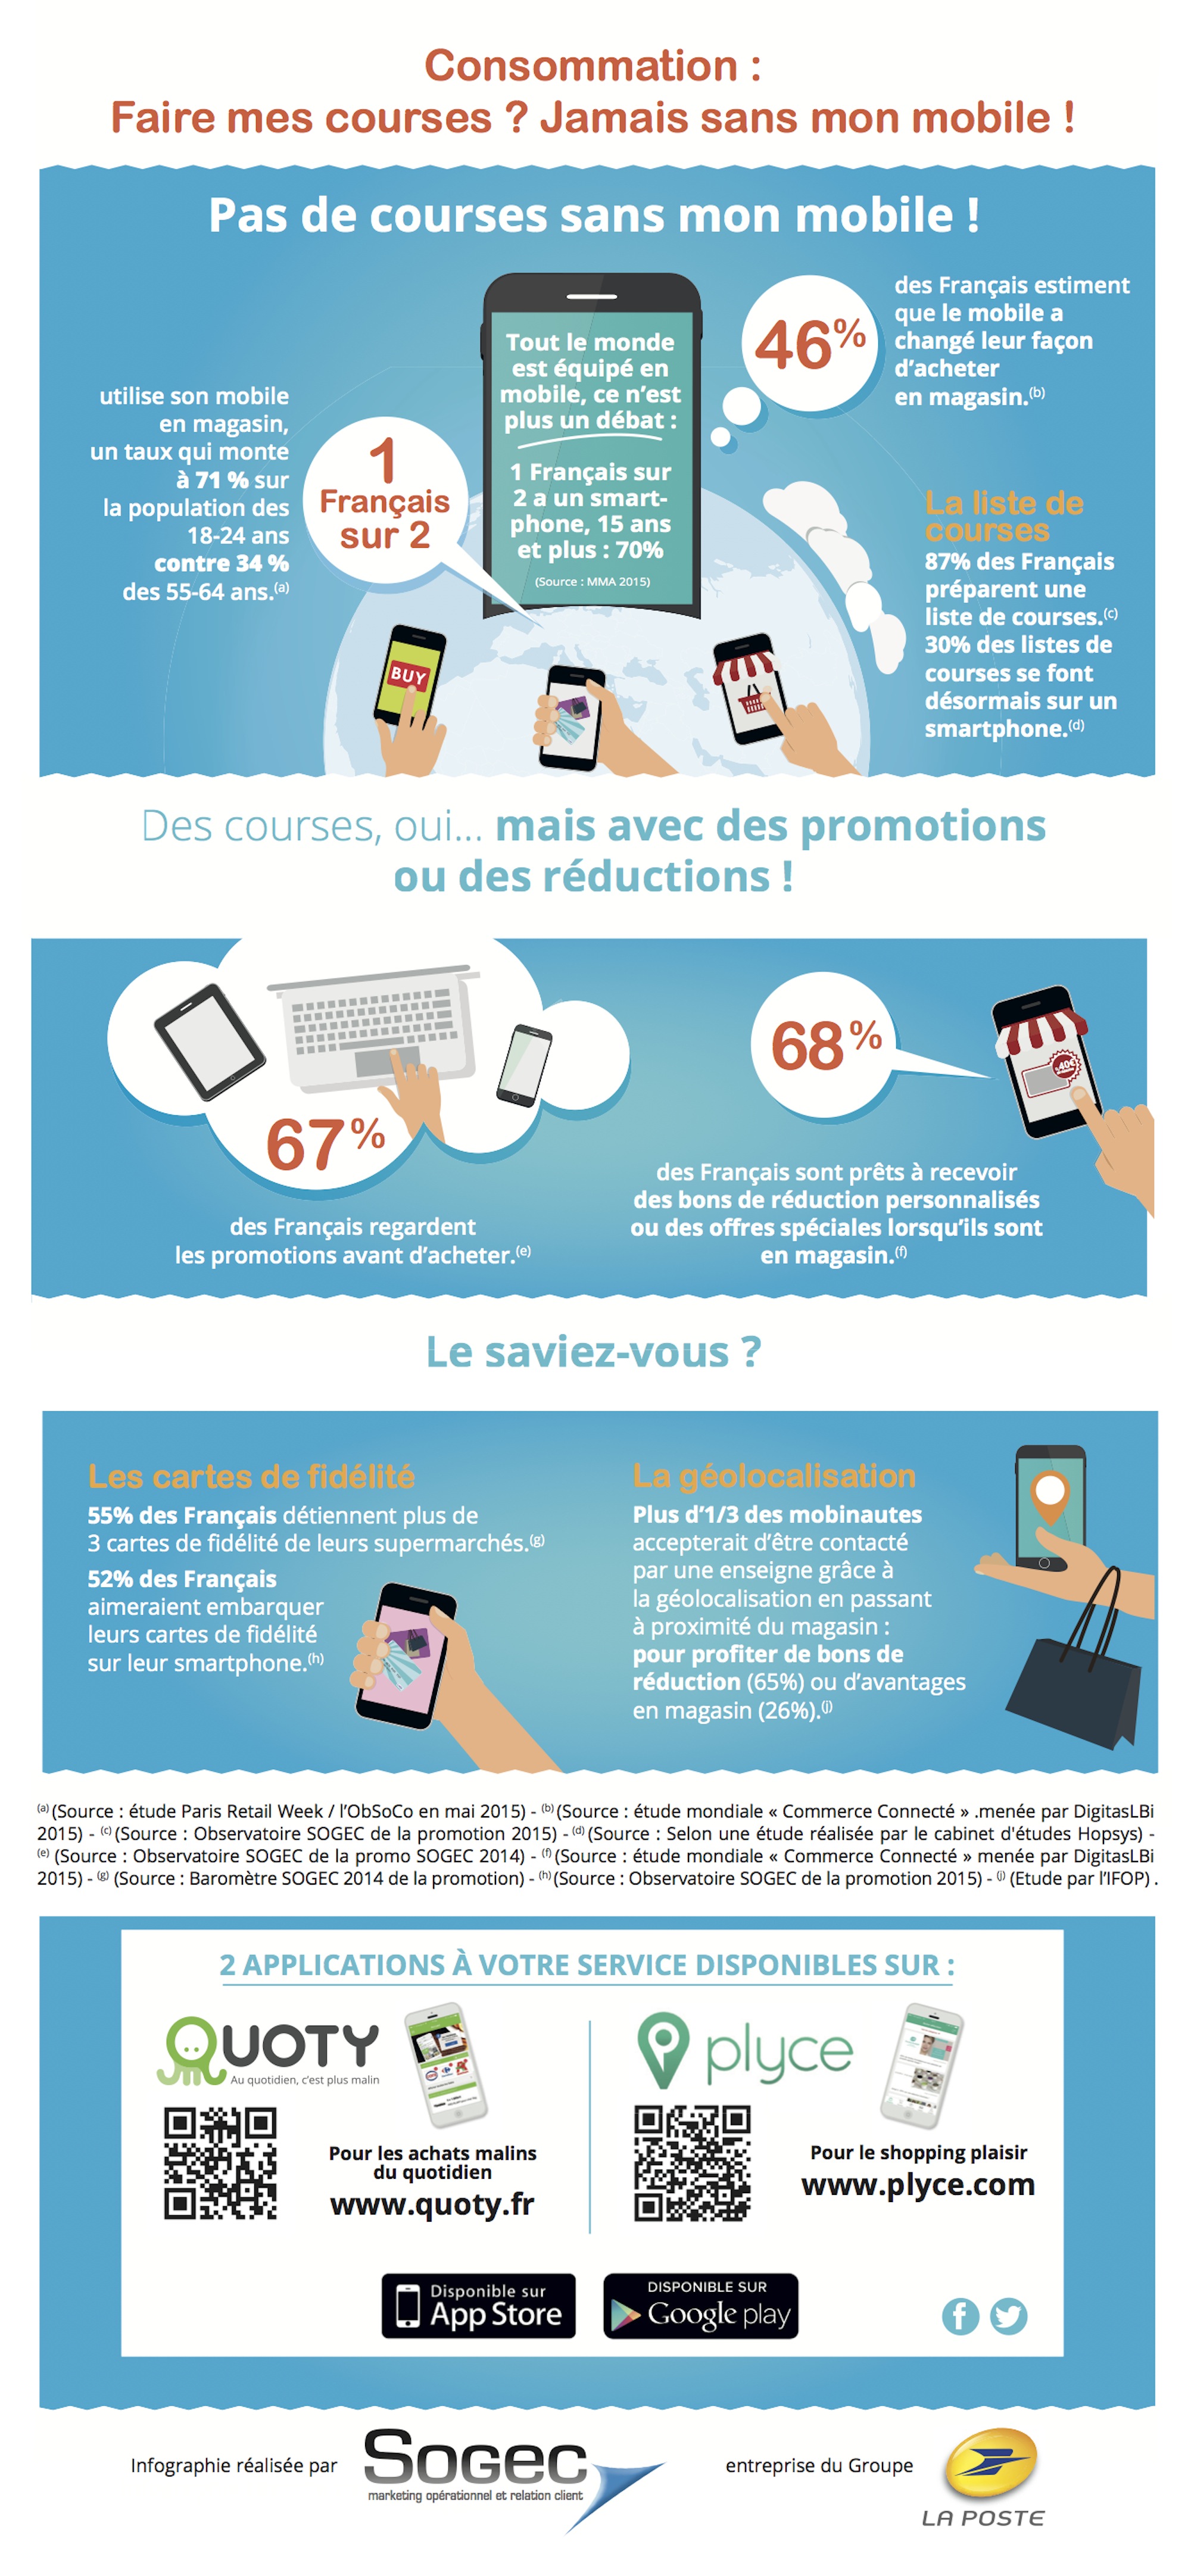 30% des Français font leur liste de courses sur leur mobile